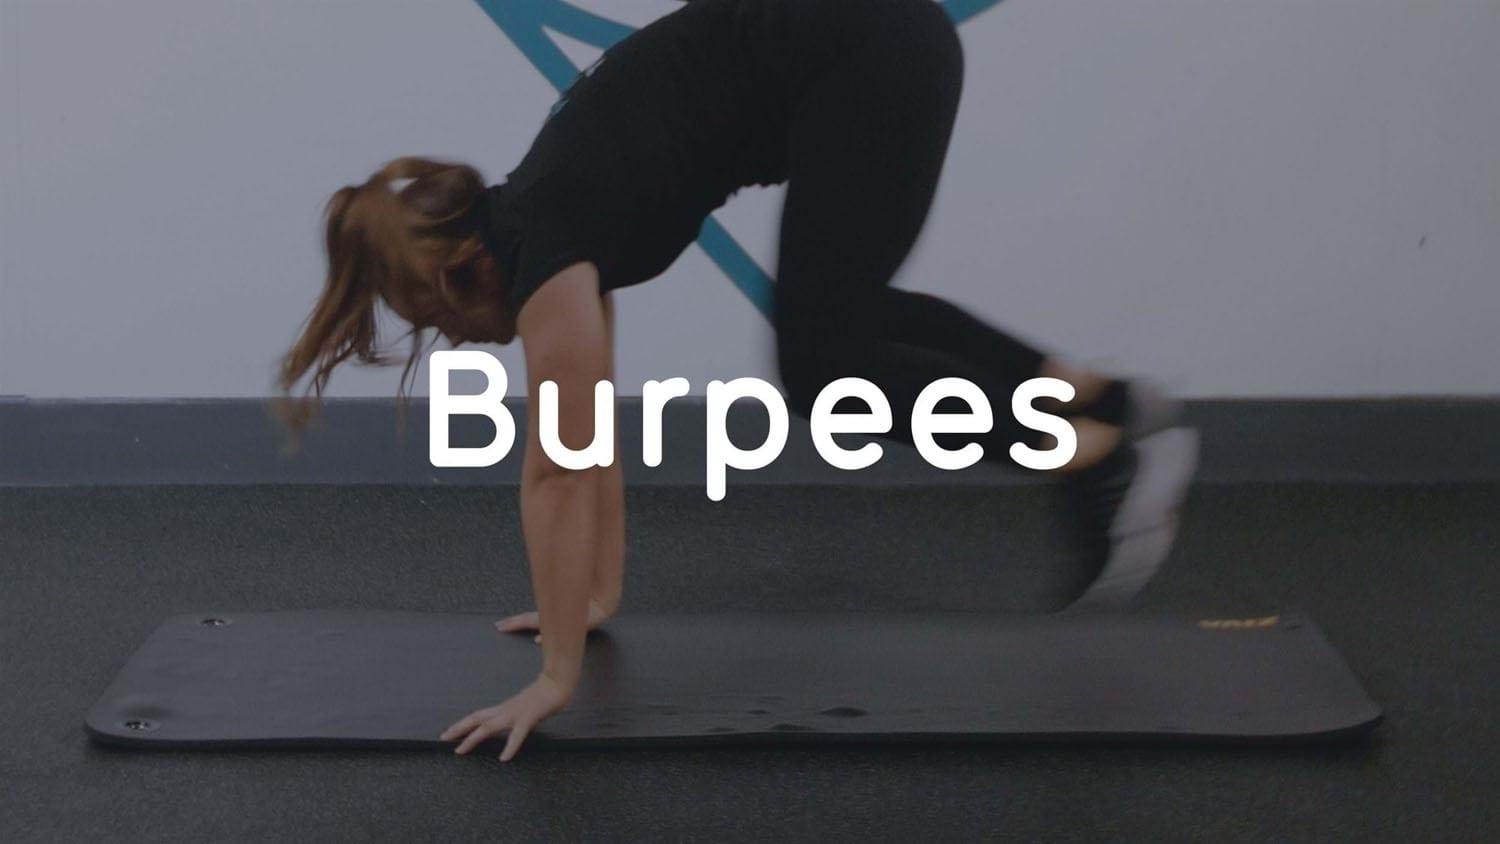 Burpee exercise